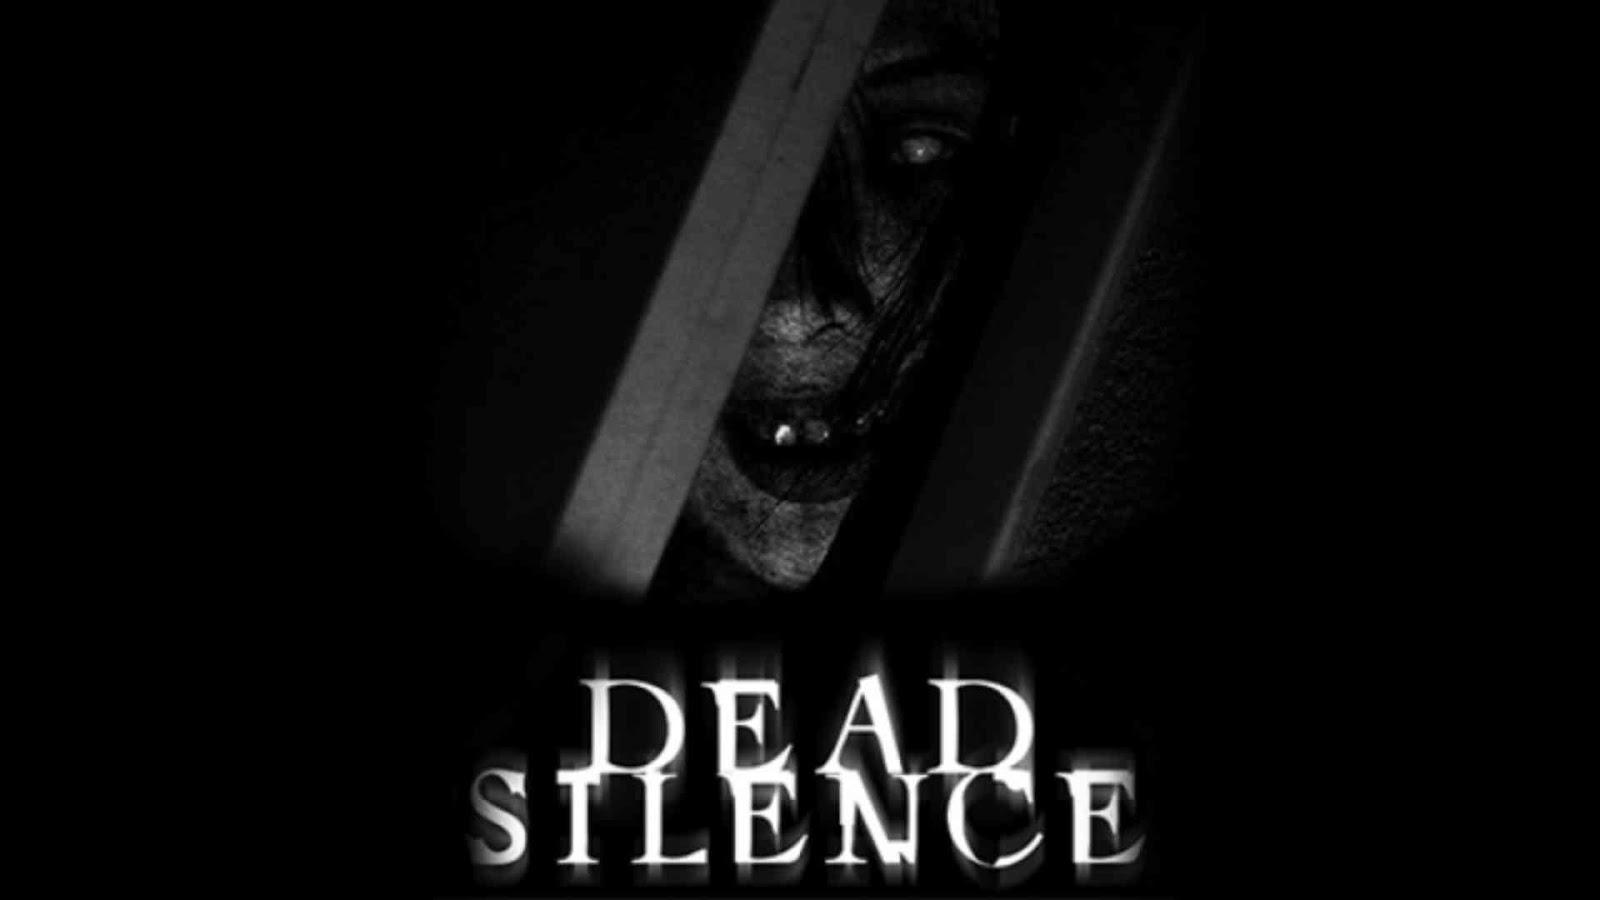 The Dead Silence